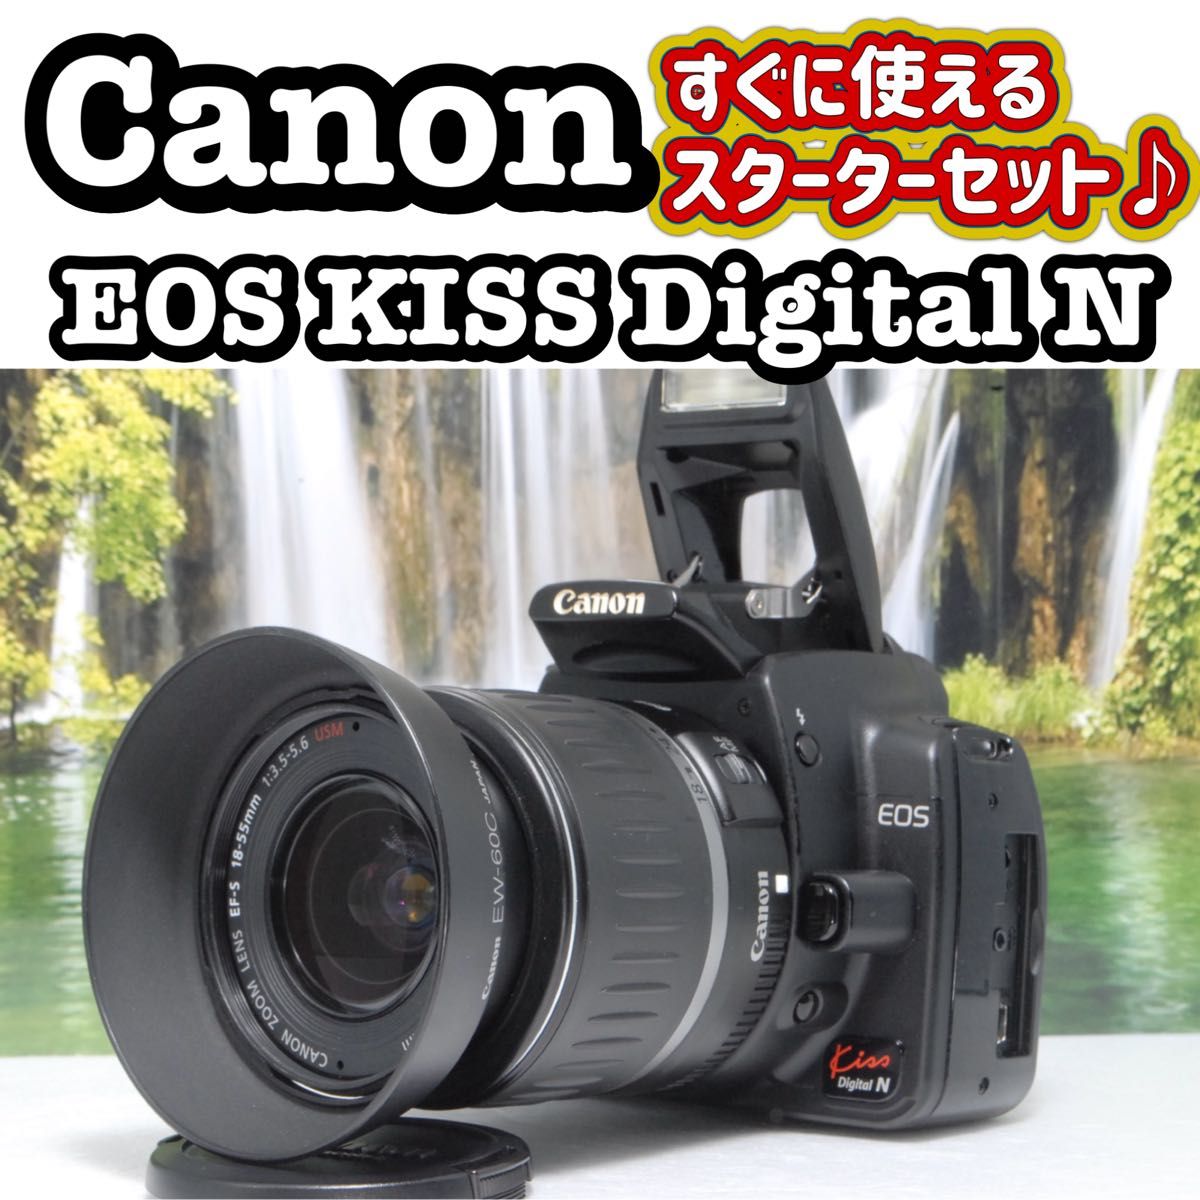 旅行のお供に　Canon キヤノン Kiss N 初めての一眼レフに　 レンズ Canon EOS DIGITAL キャノン